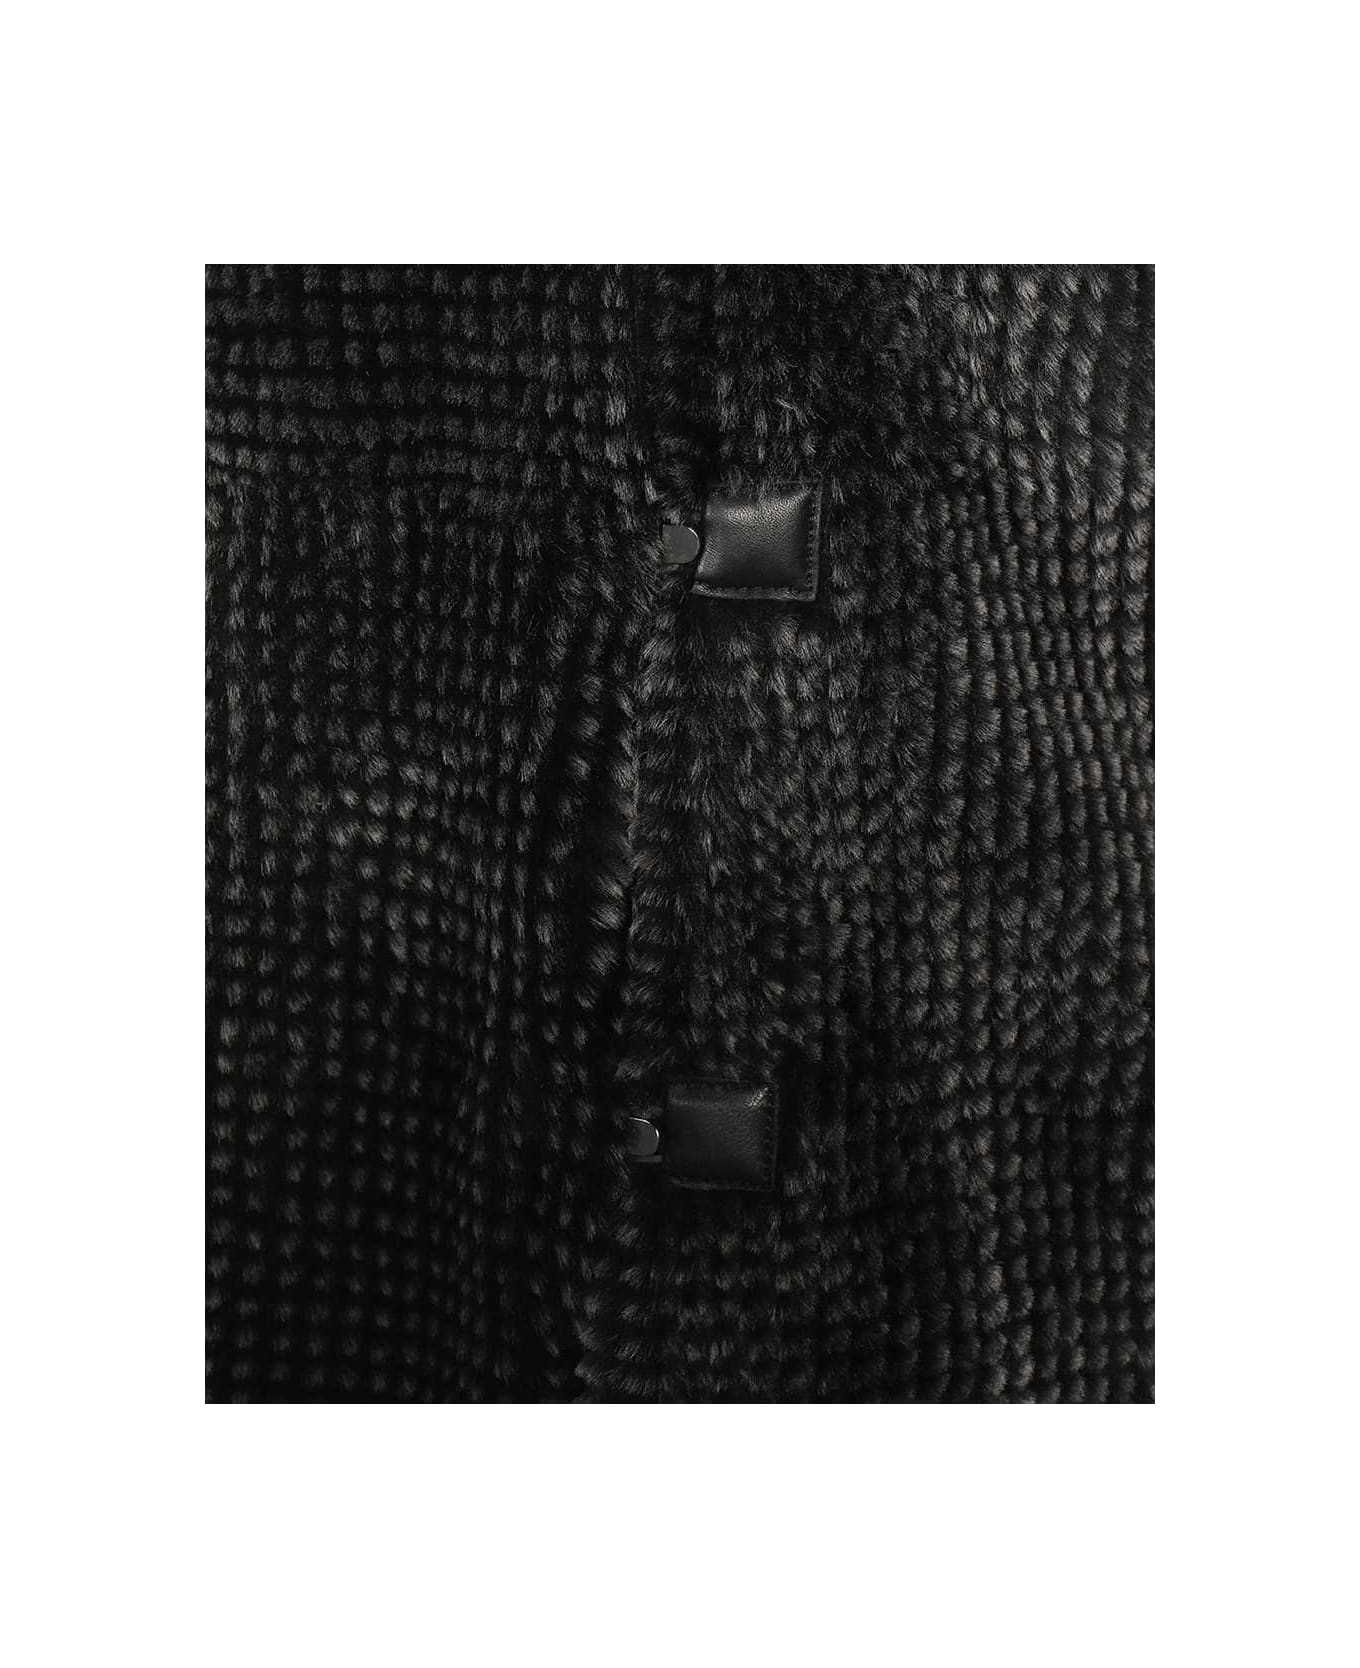 Emporio Armani Fur Coat - grey